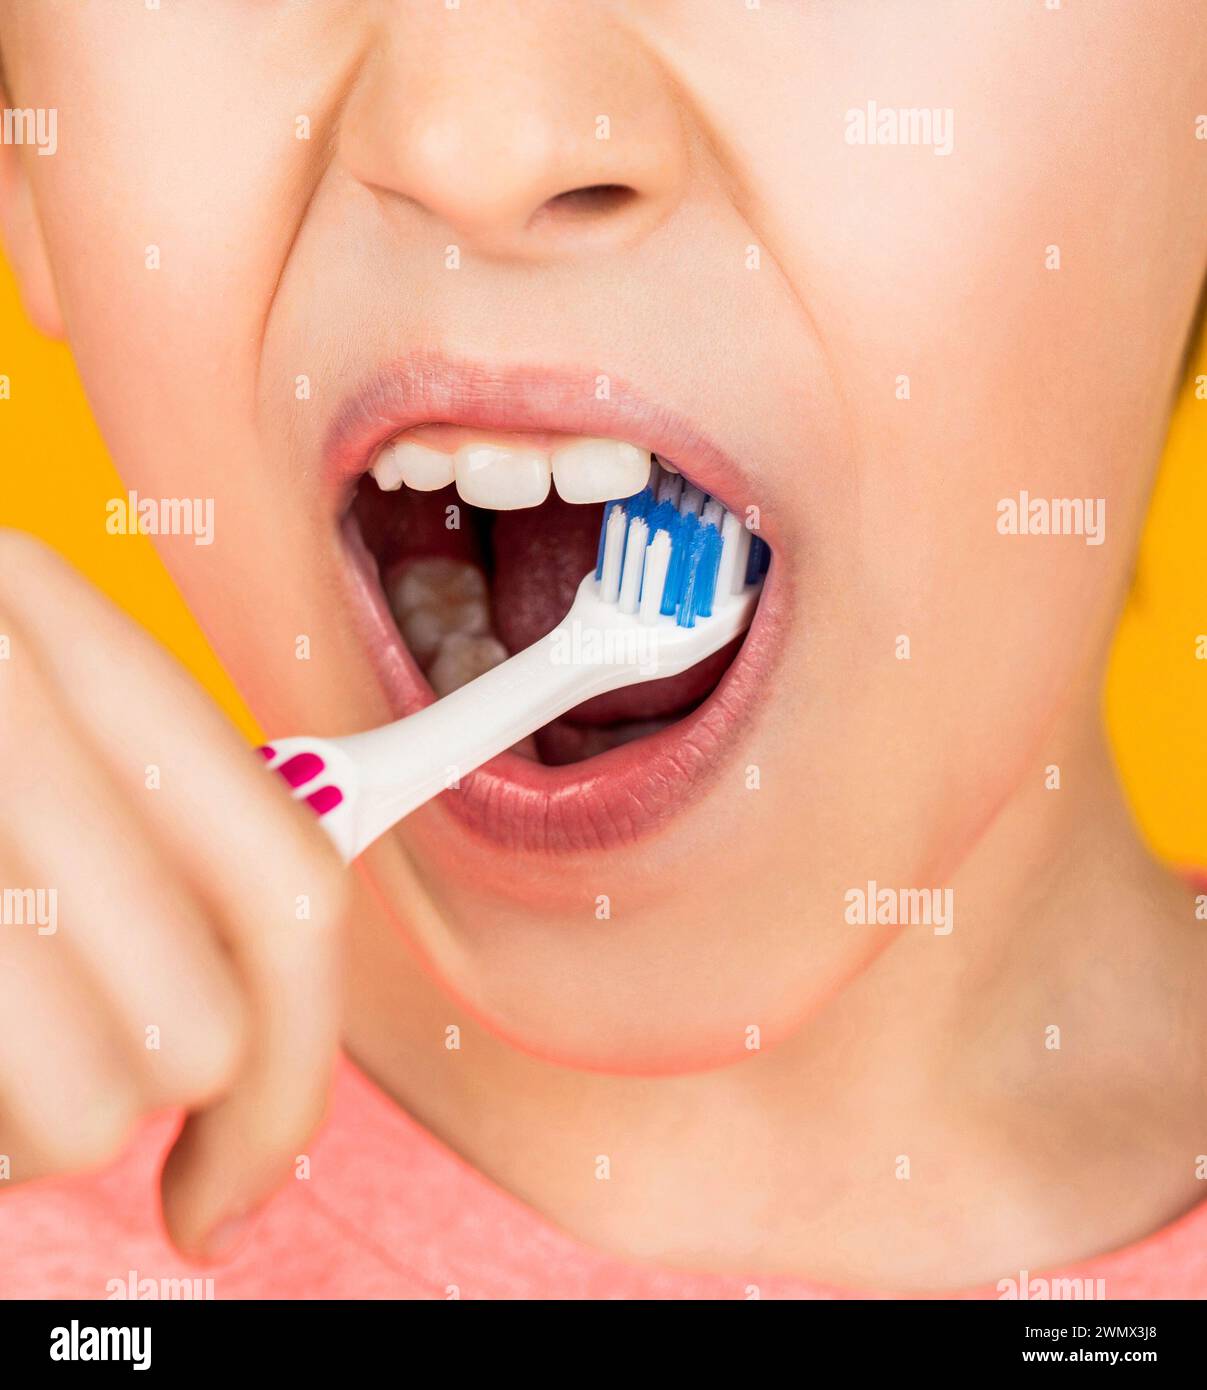 Little kid brushing her teeth. Kid boy brushing teeth. Boy toothbrush white toothpaste. Child shows toothbrushes. Little boy cleaning teeth Stock Photo